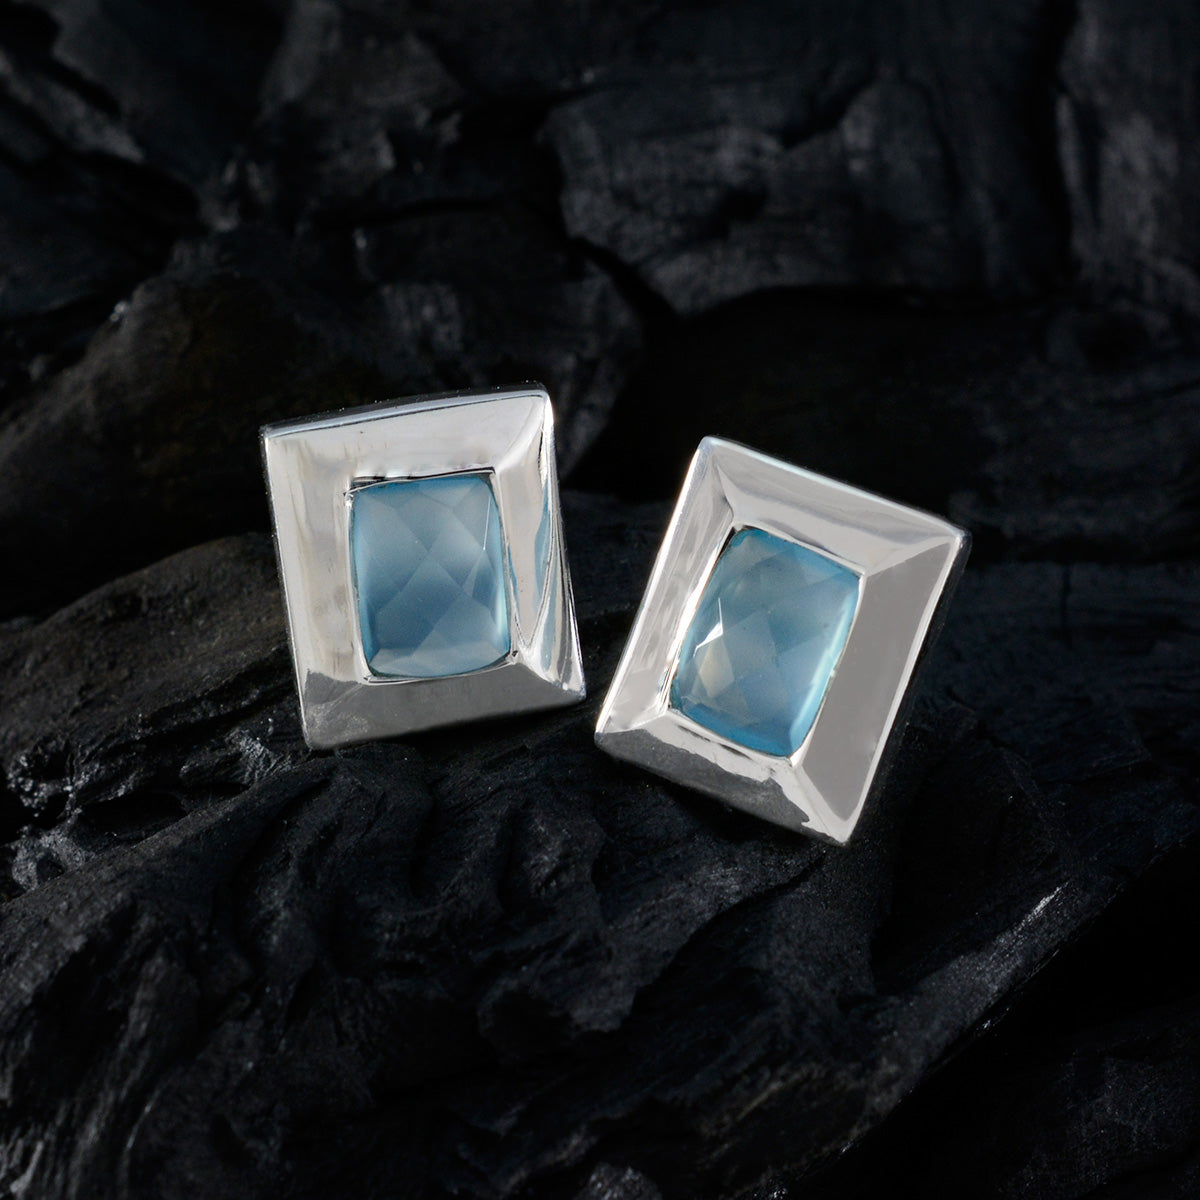 Riyo Tasty Sterling Silber Ohrring für Frau, blauer Chalcedon-Ohrring, Lünettenfassung, blauer Ohrring, Ohrstecker